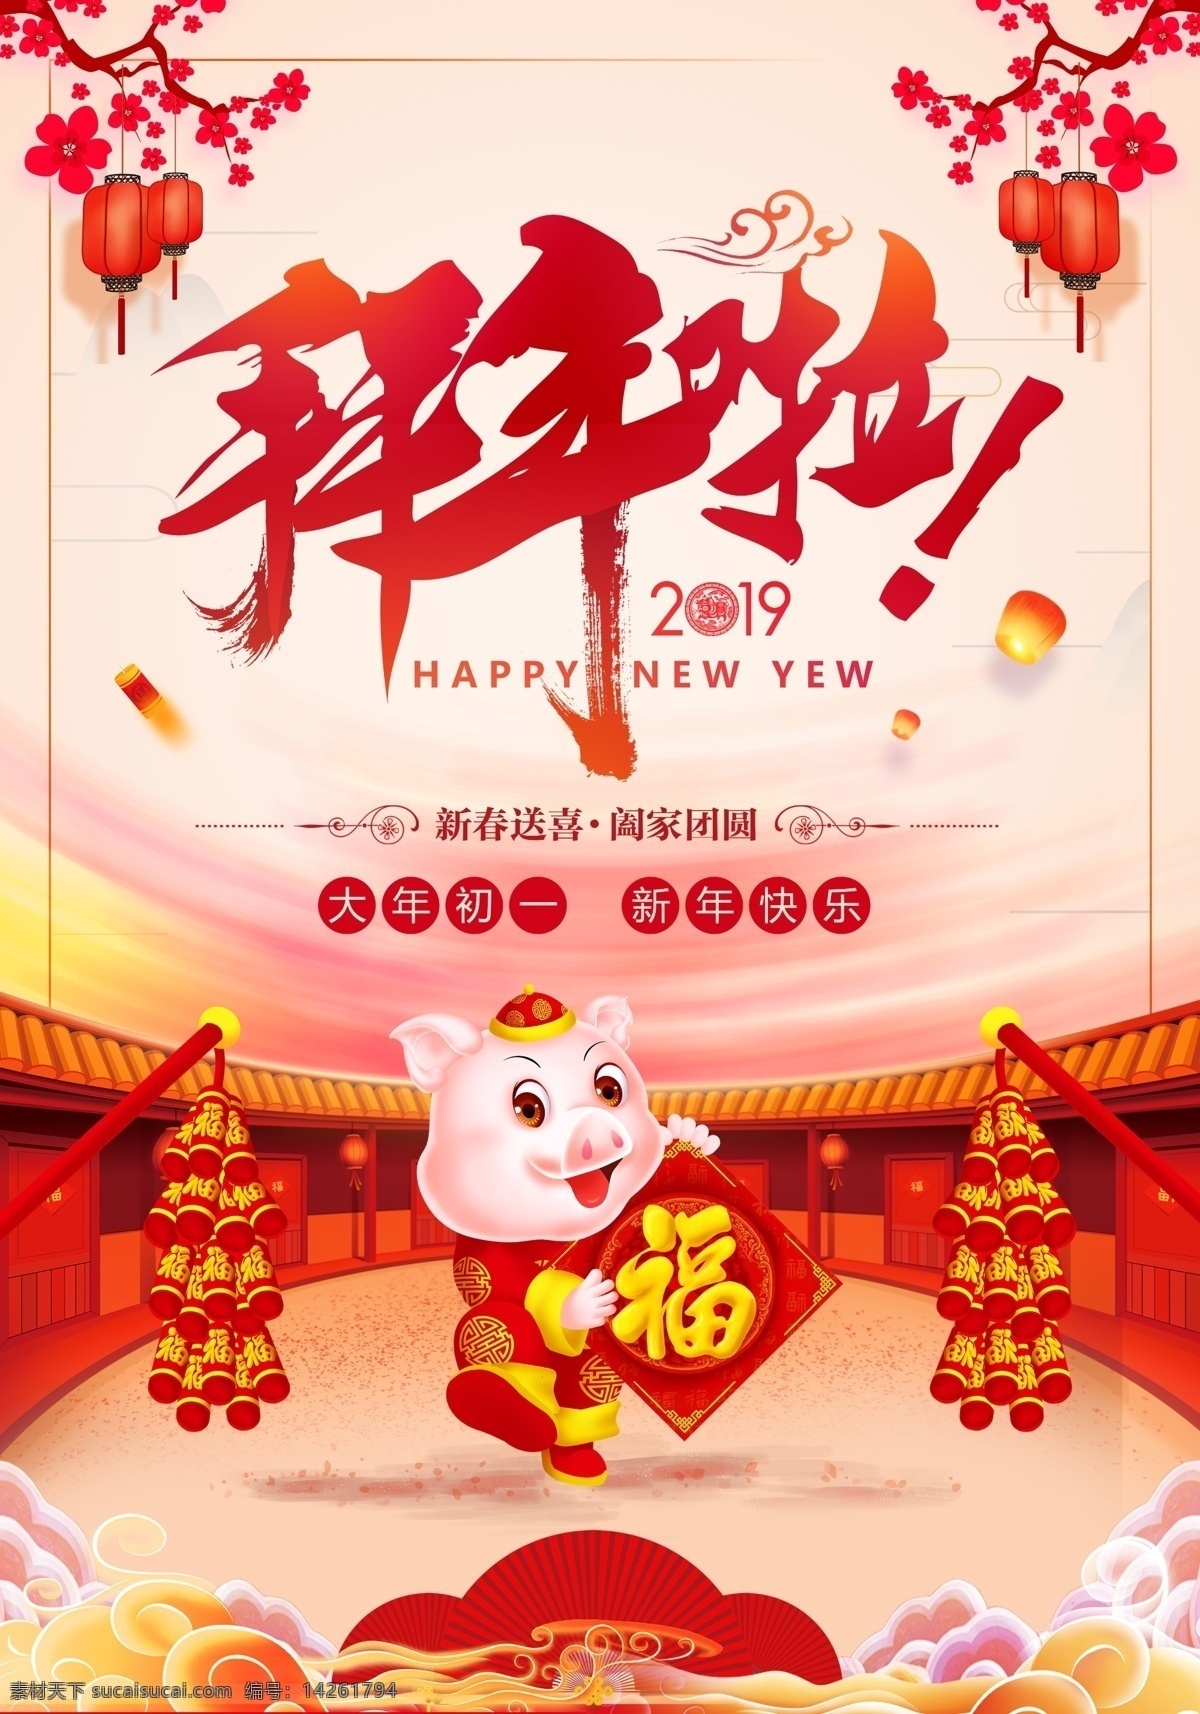 新年拜年海报 拜年啦 新年 猪年 鞭炮 灯笼 背景 唯美 梅花 中国风 恭贺新春 送福 分层